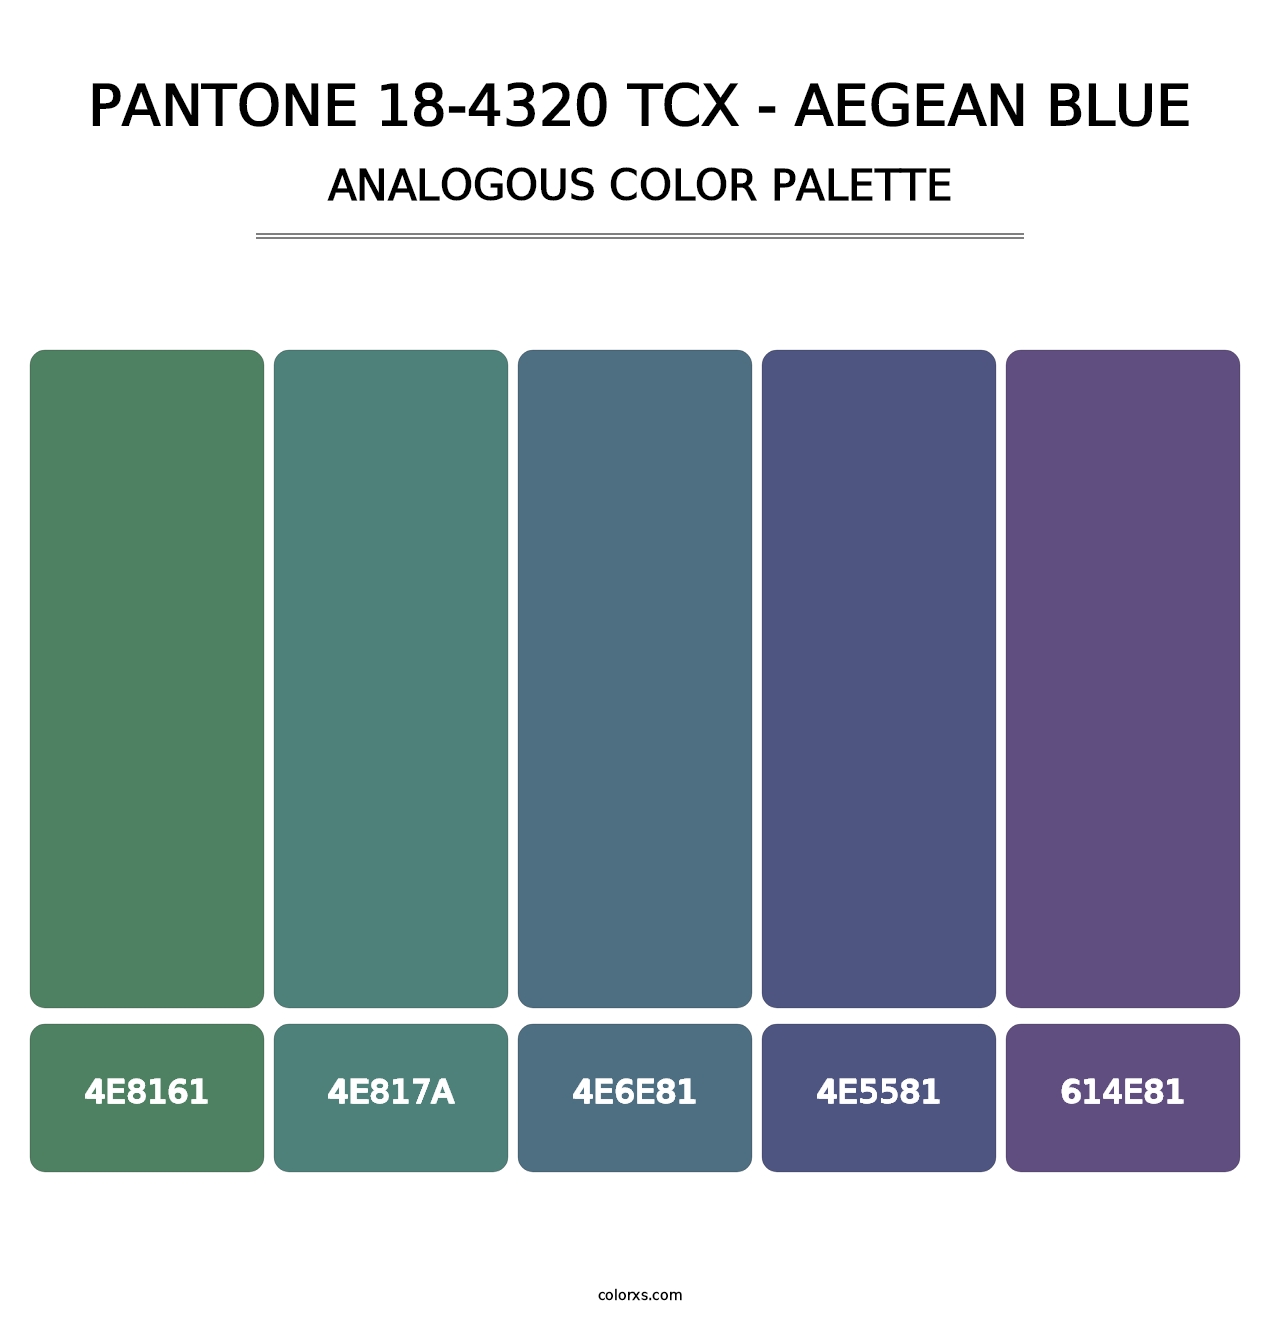 PANTONE 18-4320 TCX - Aegean Blue - Analogous Color Palette